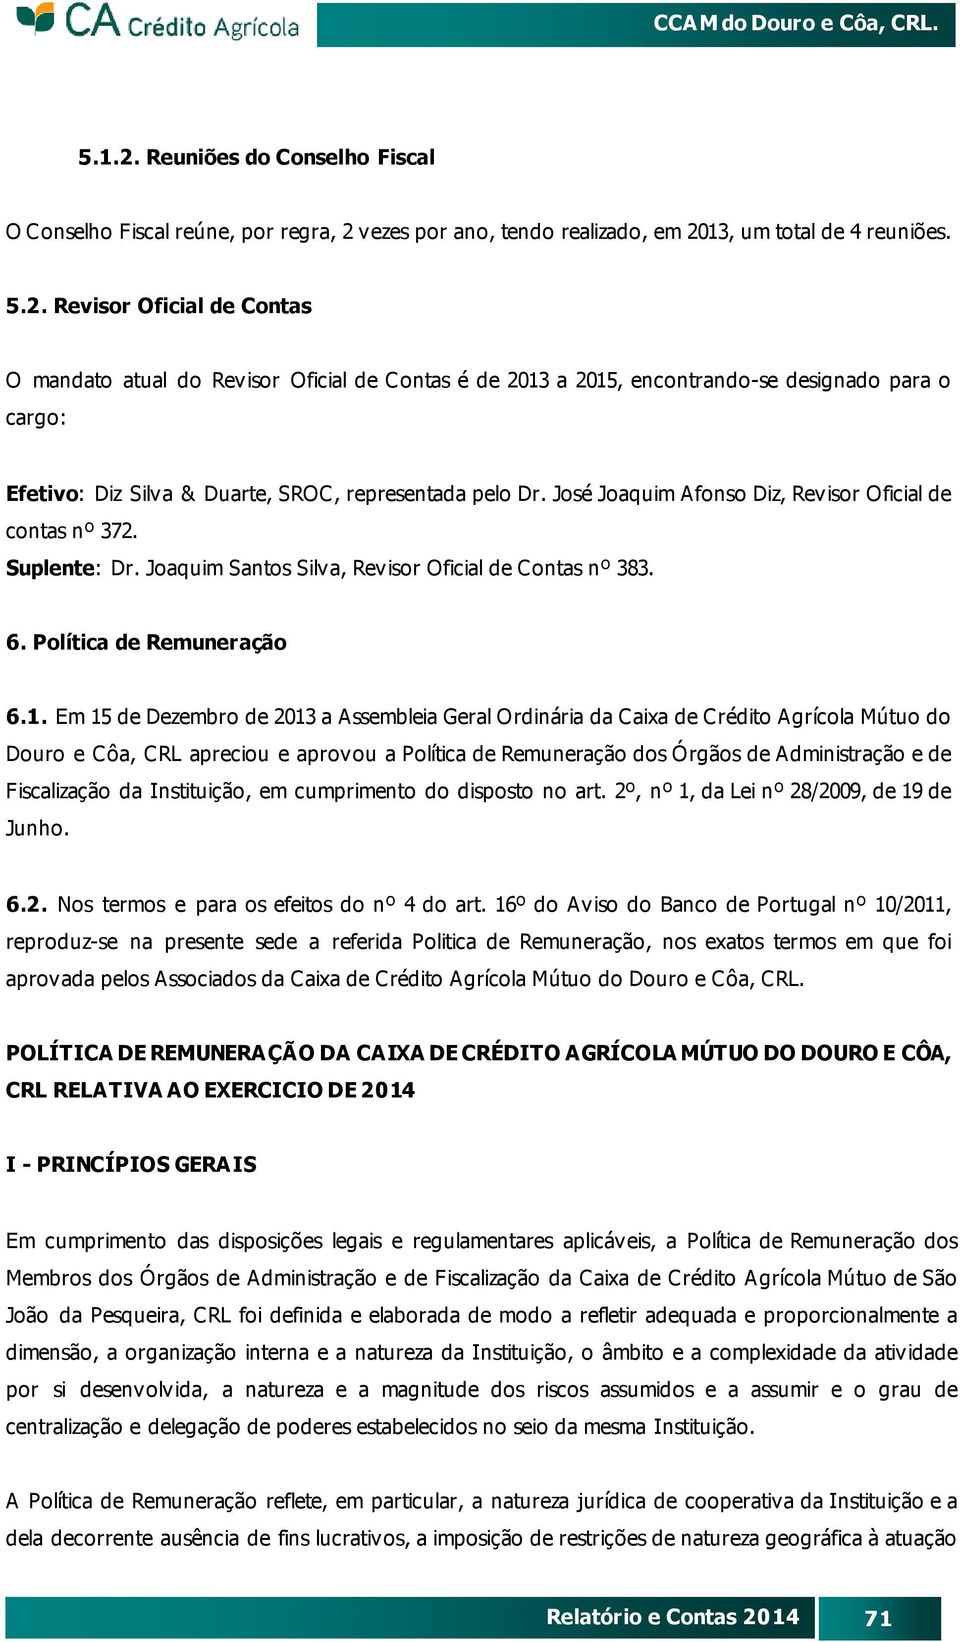 Em 15 de Dezembro de 2013 a Assembleia Geral Ordinária da Caixa de Crédito Agrícola Mútuo do Douro e Côa, CRL apreciou e aprovou a Política de Remuneração dos Órgãos de Administração e de